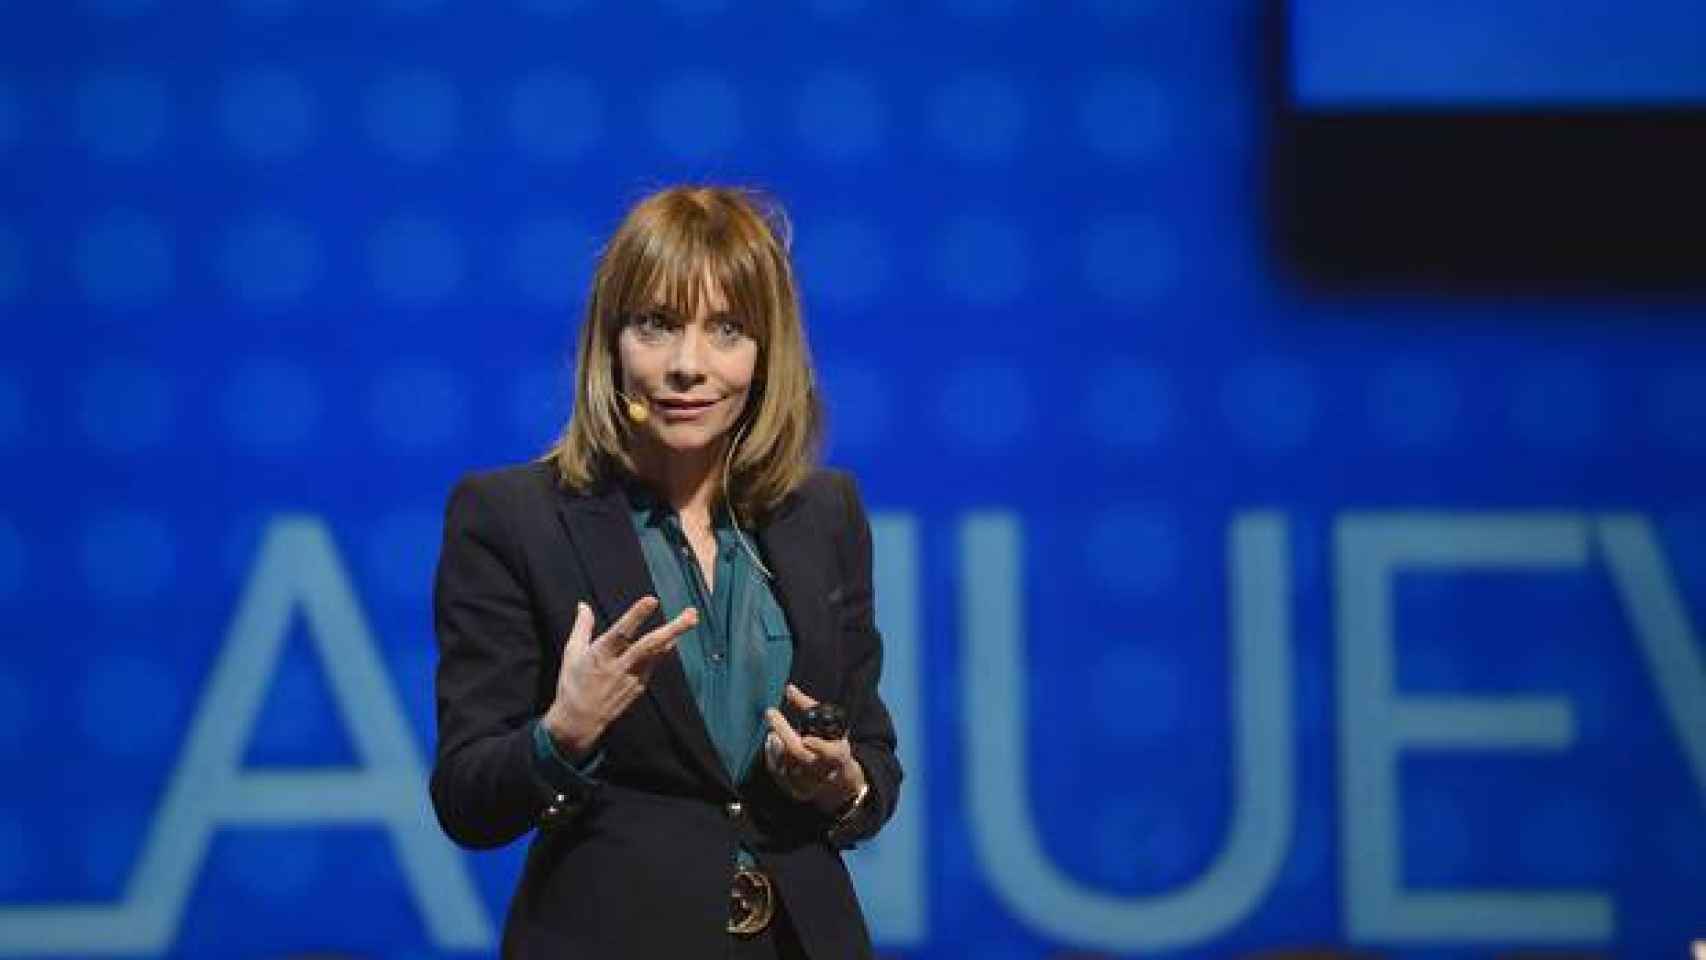 María Garaña en una presentación de Microsoft.